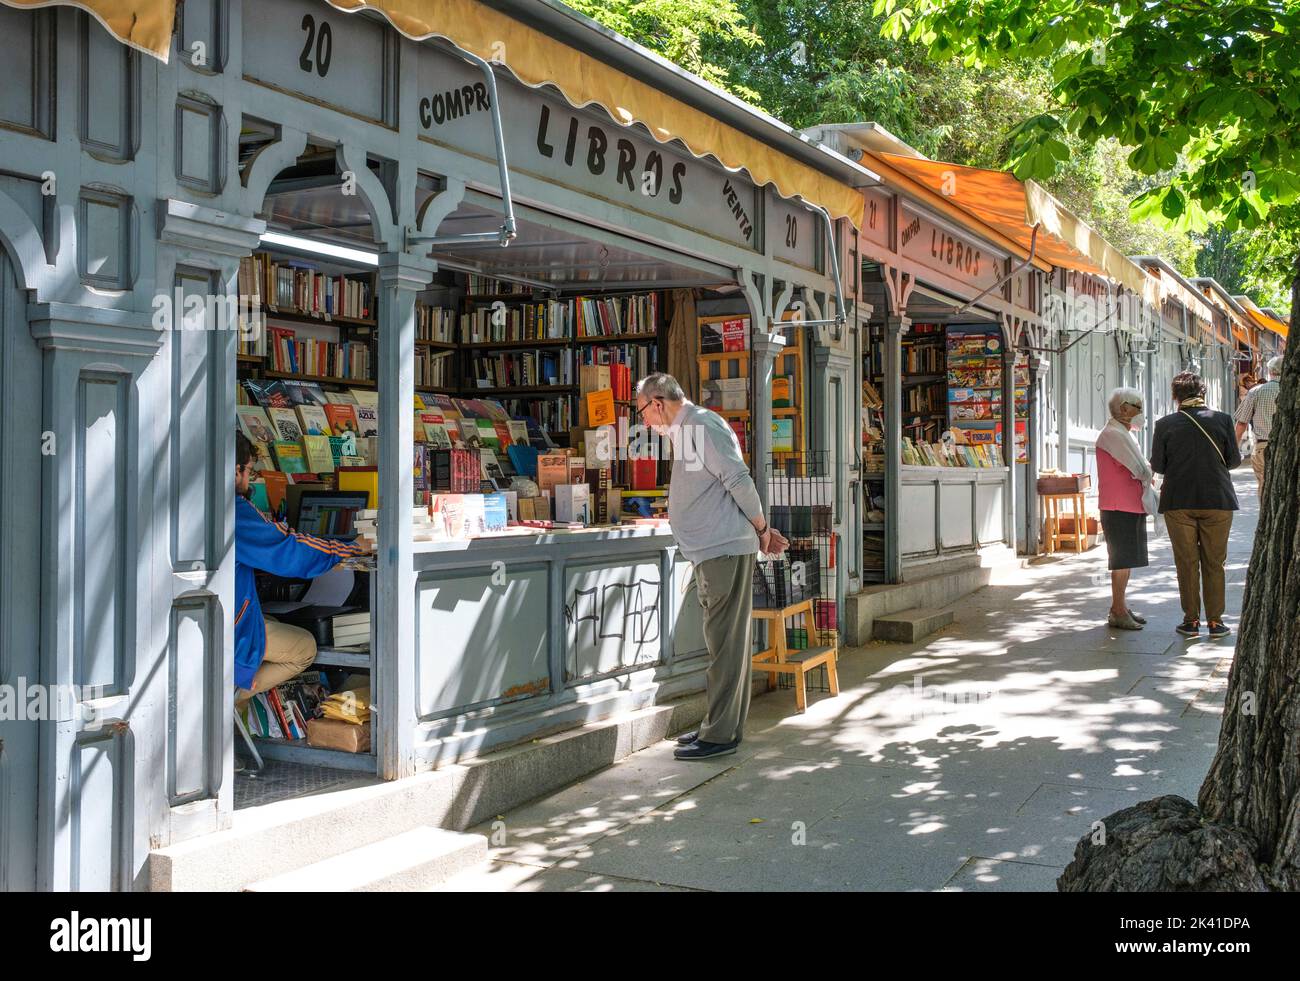 España, Madrid. Puestos de libros, Calle Moyano. Foto de stock